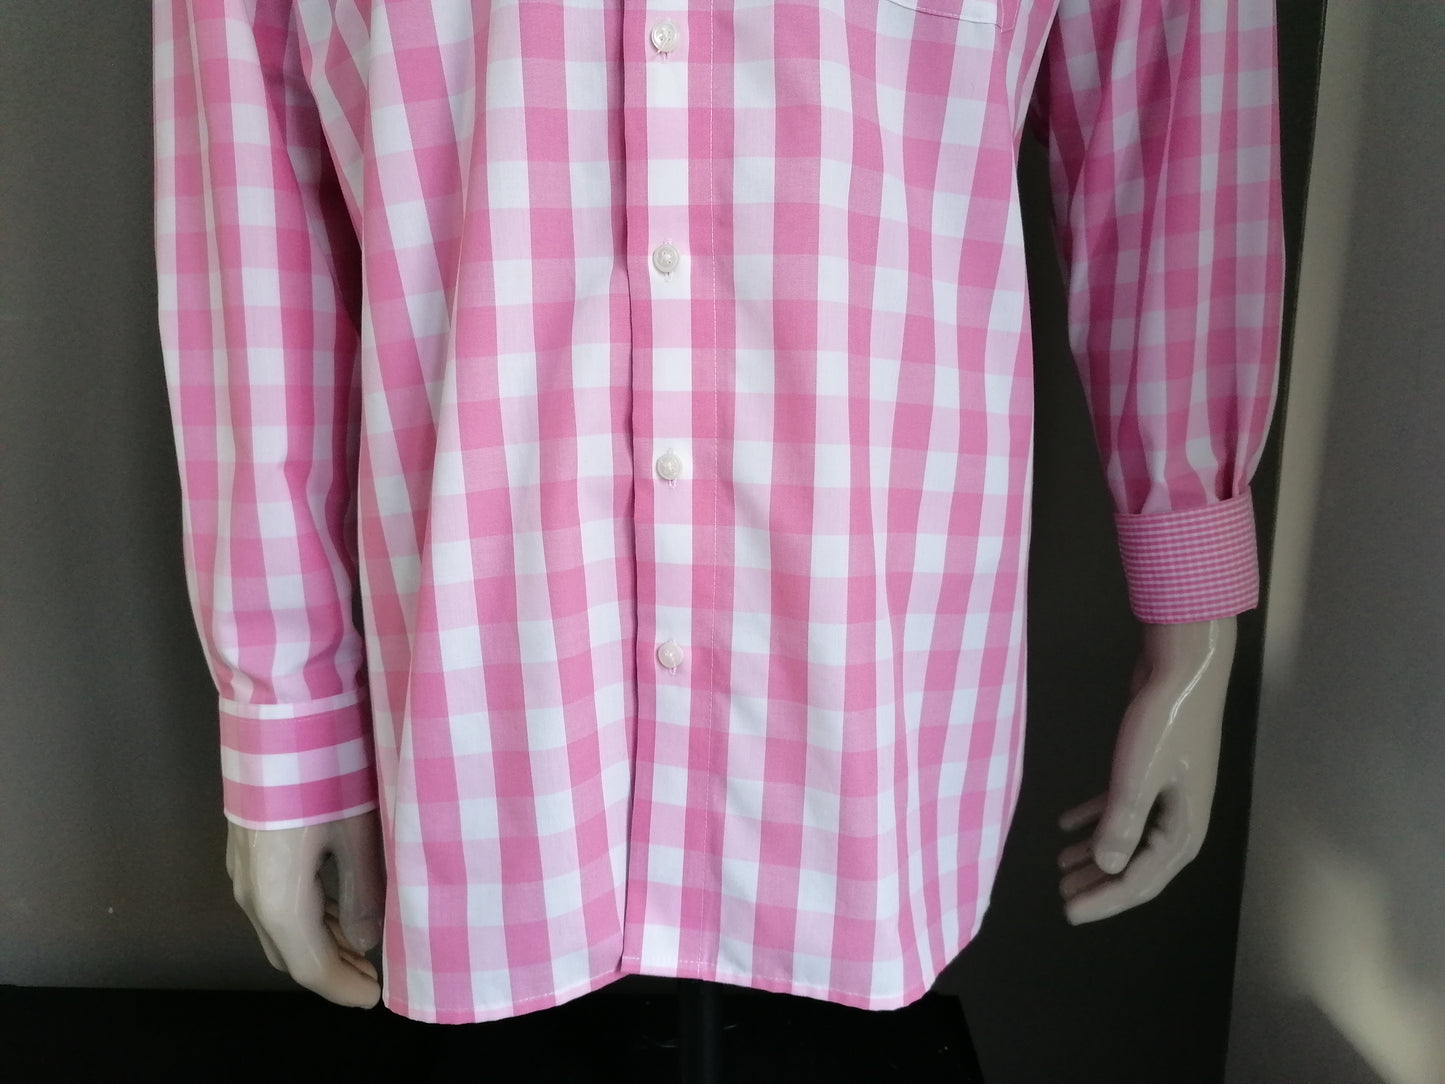 Olymp Luxor overhemd. Roze Wit geblokt. Maat 44 / XL. Slim Line